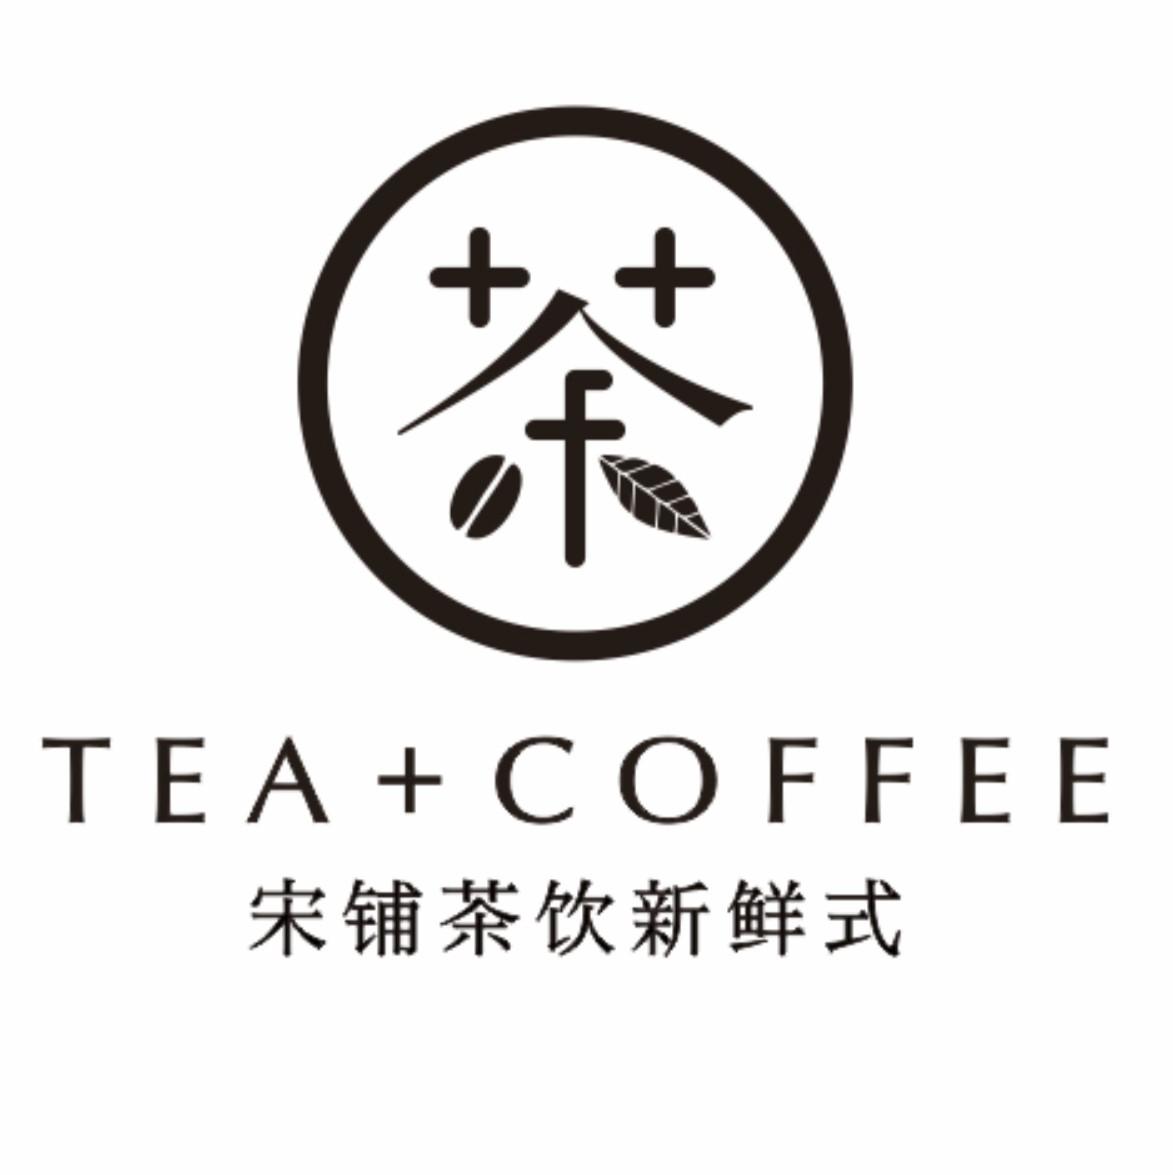 宋铺茶饮新鲜式 茶 tea coffee商标公告